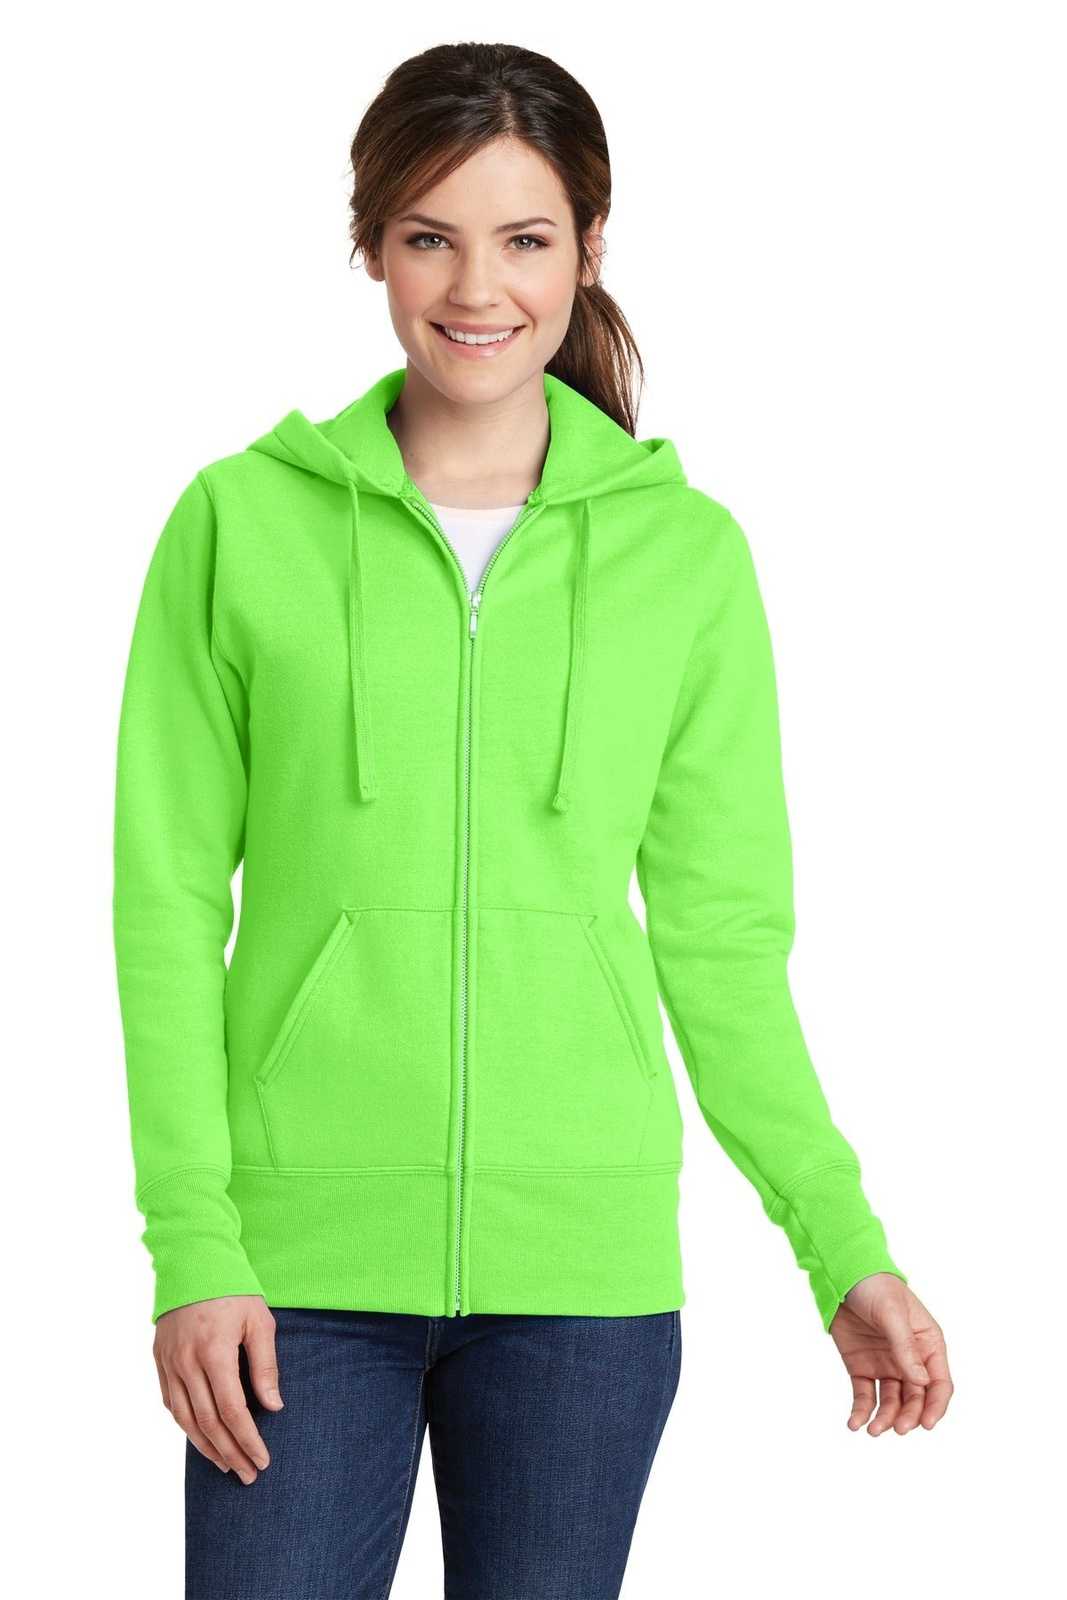 Port & Company LPC78ZH Ladies Core Fleece Full-Zip Hooded Sweatshirt - Neon Green - HIT a Double - 1